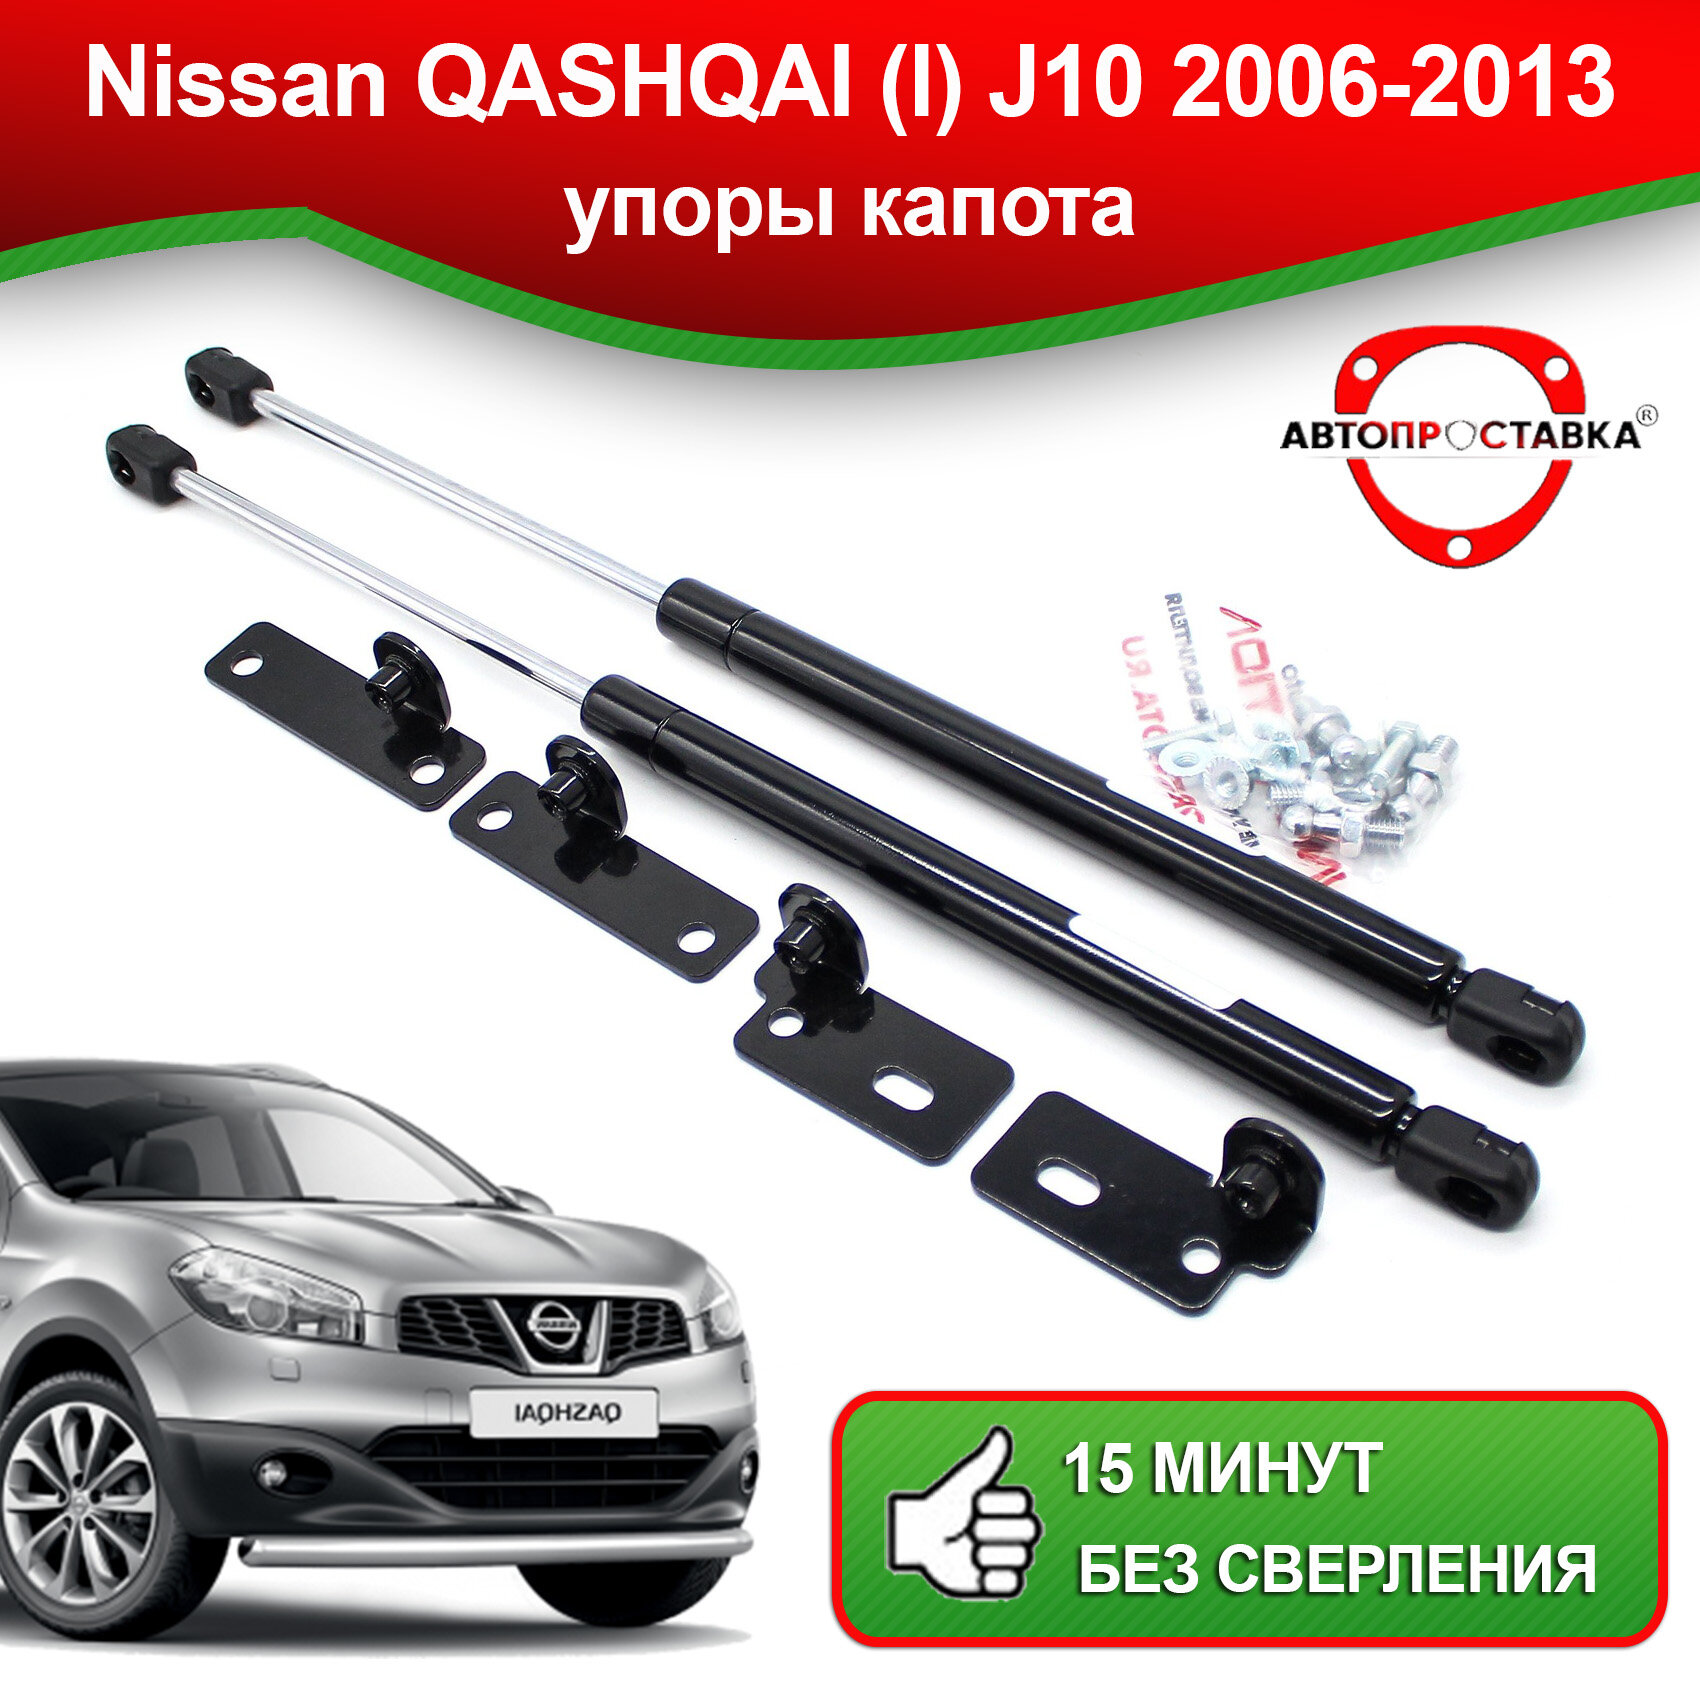 Упоры капота для Nissan QASHQAI (l) J10 2006-2013 / Газовые амортизаторы для капота Ниссан Кашкай 1 поколения